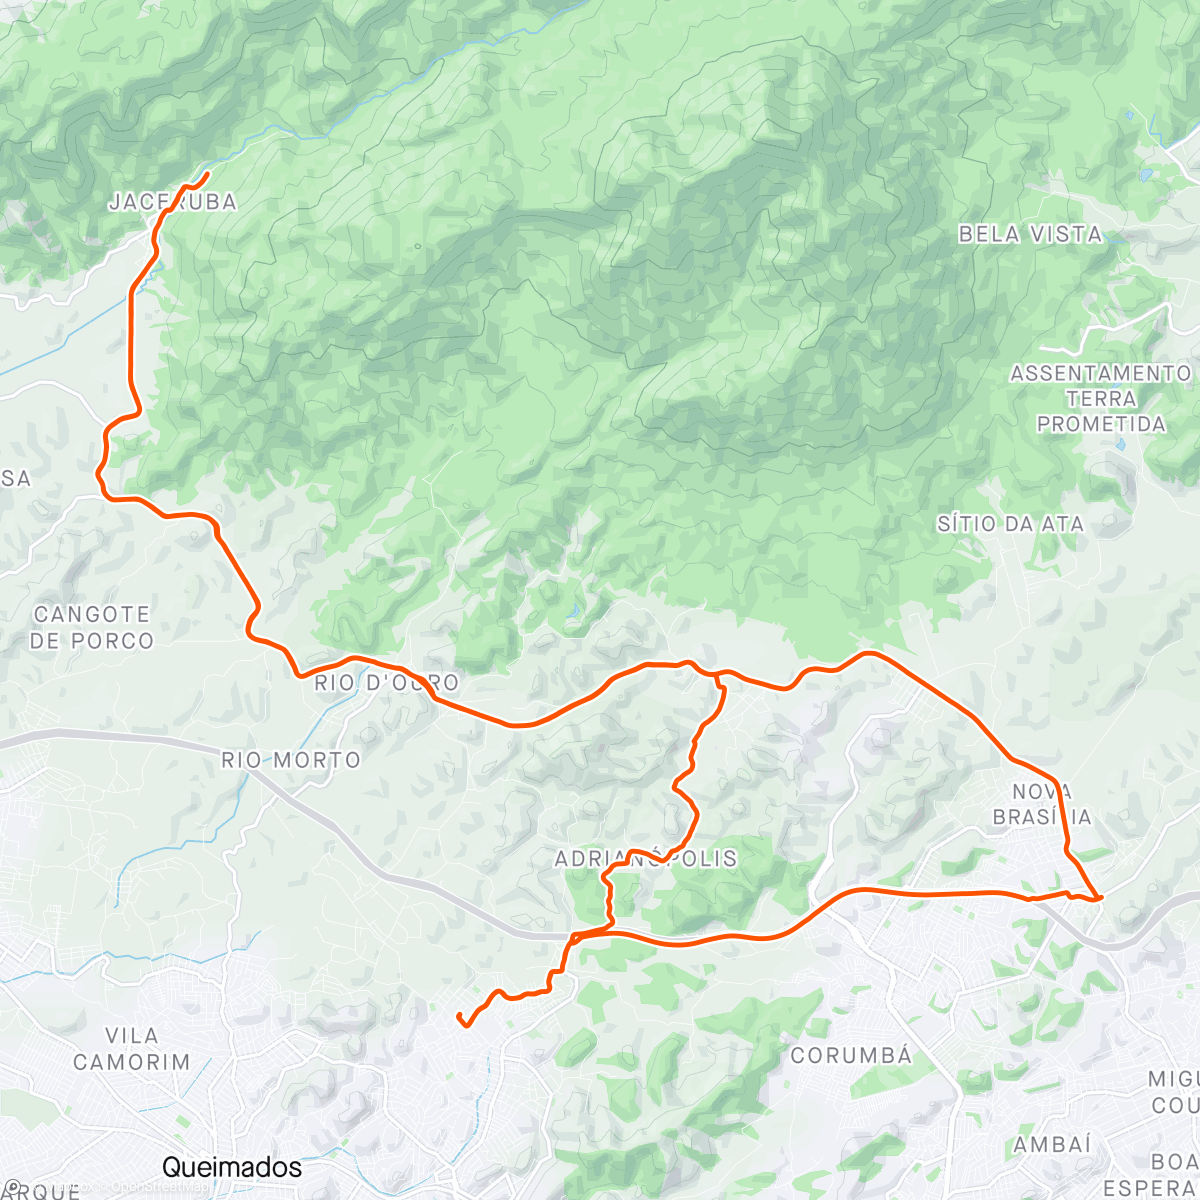 「Pedal até a Reserva de Jáceruba」活動的地圖